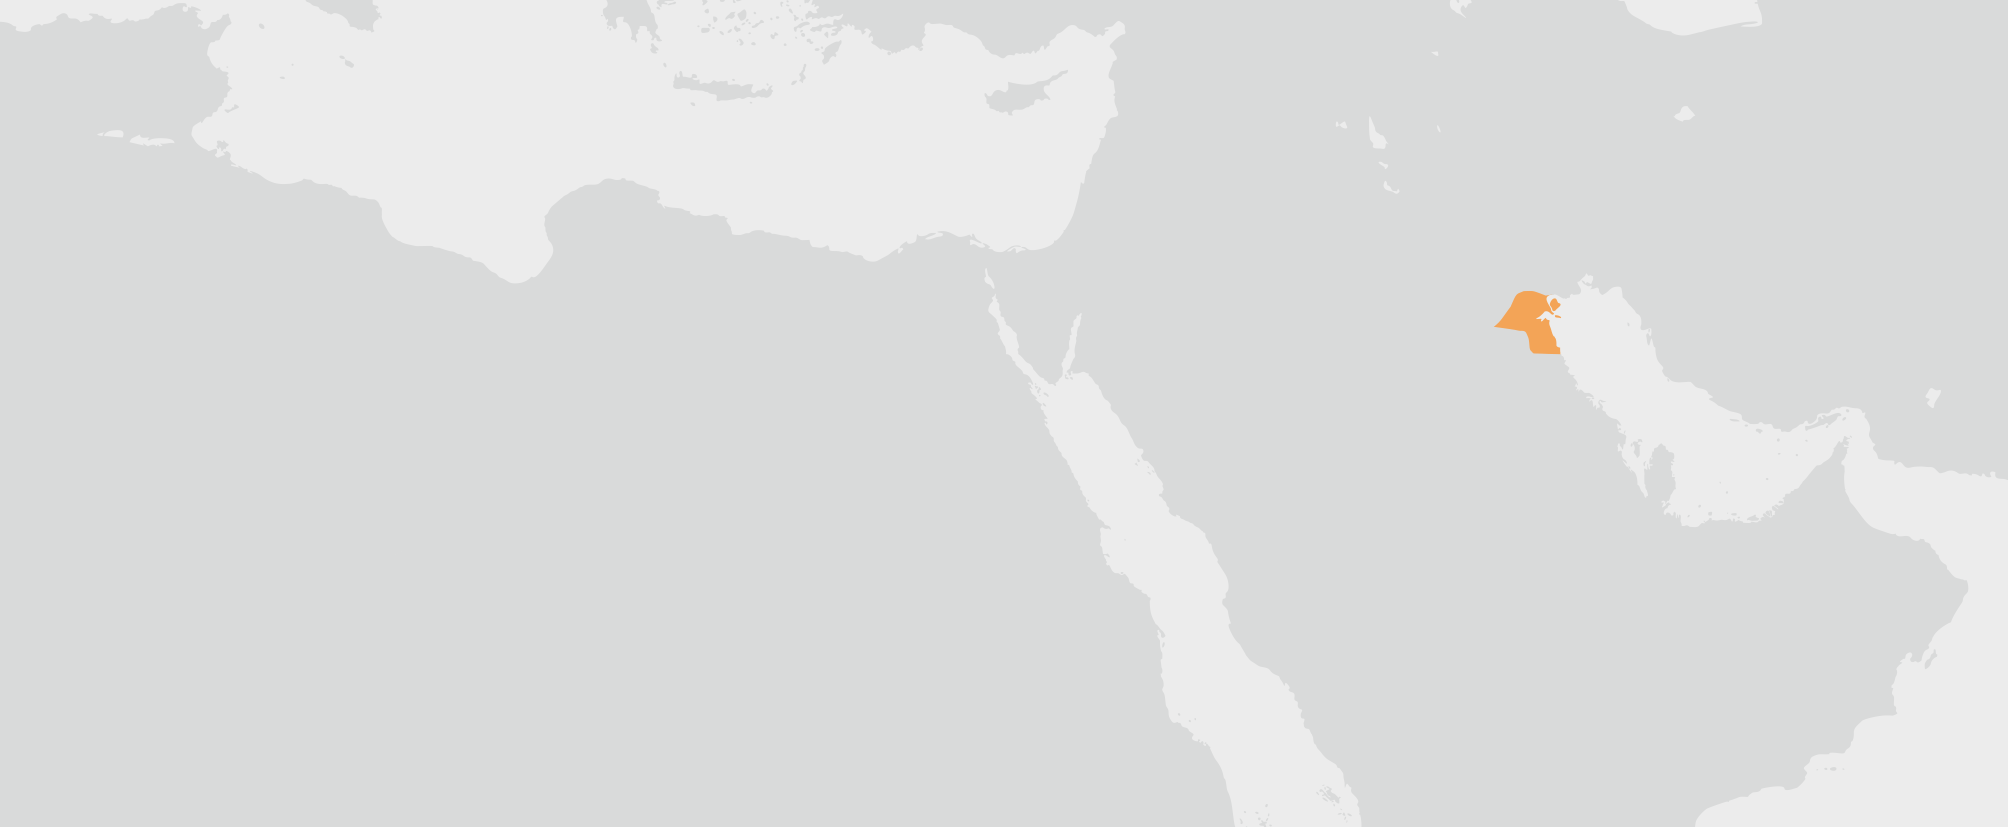 Kuvajt - umístění na mapě